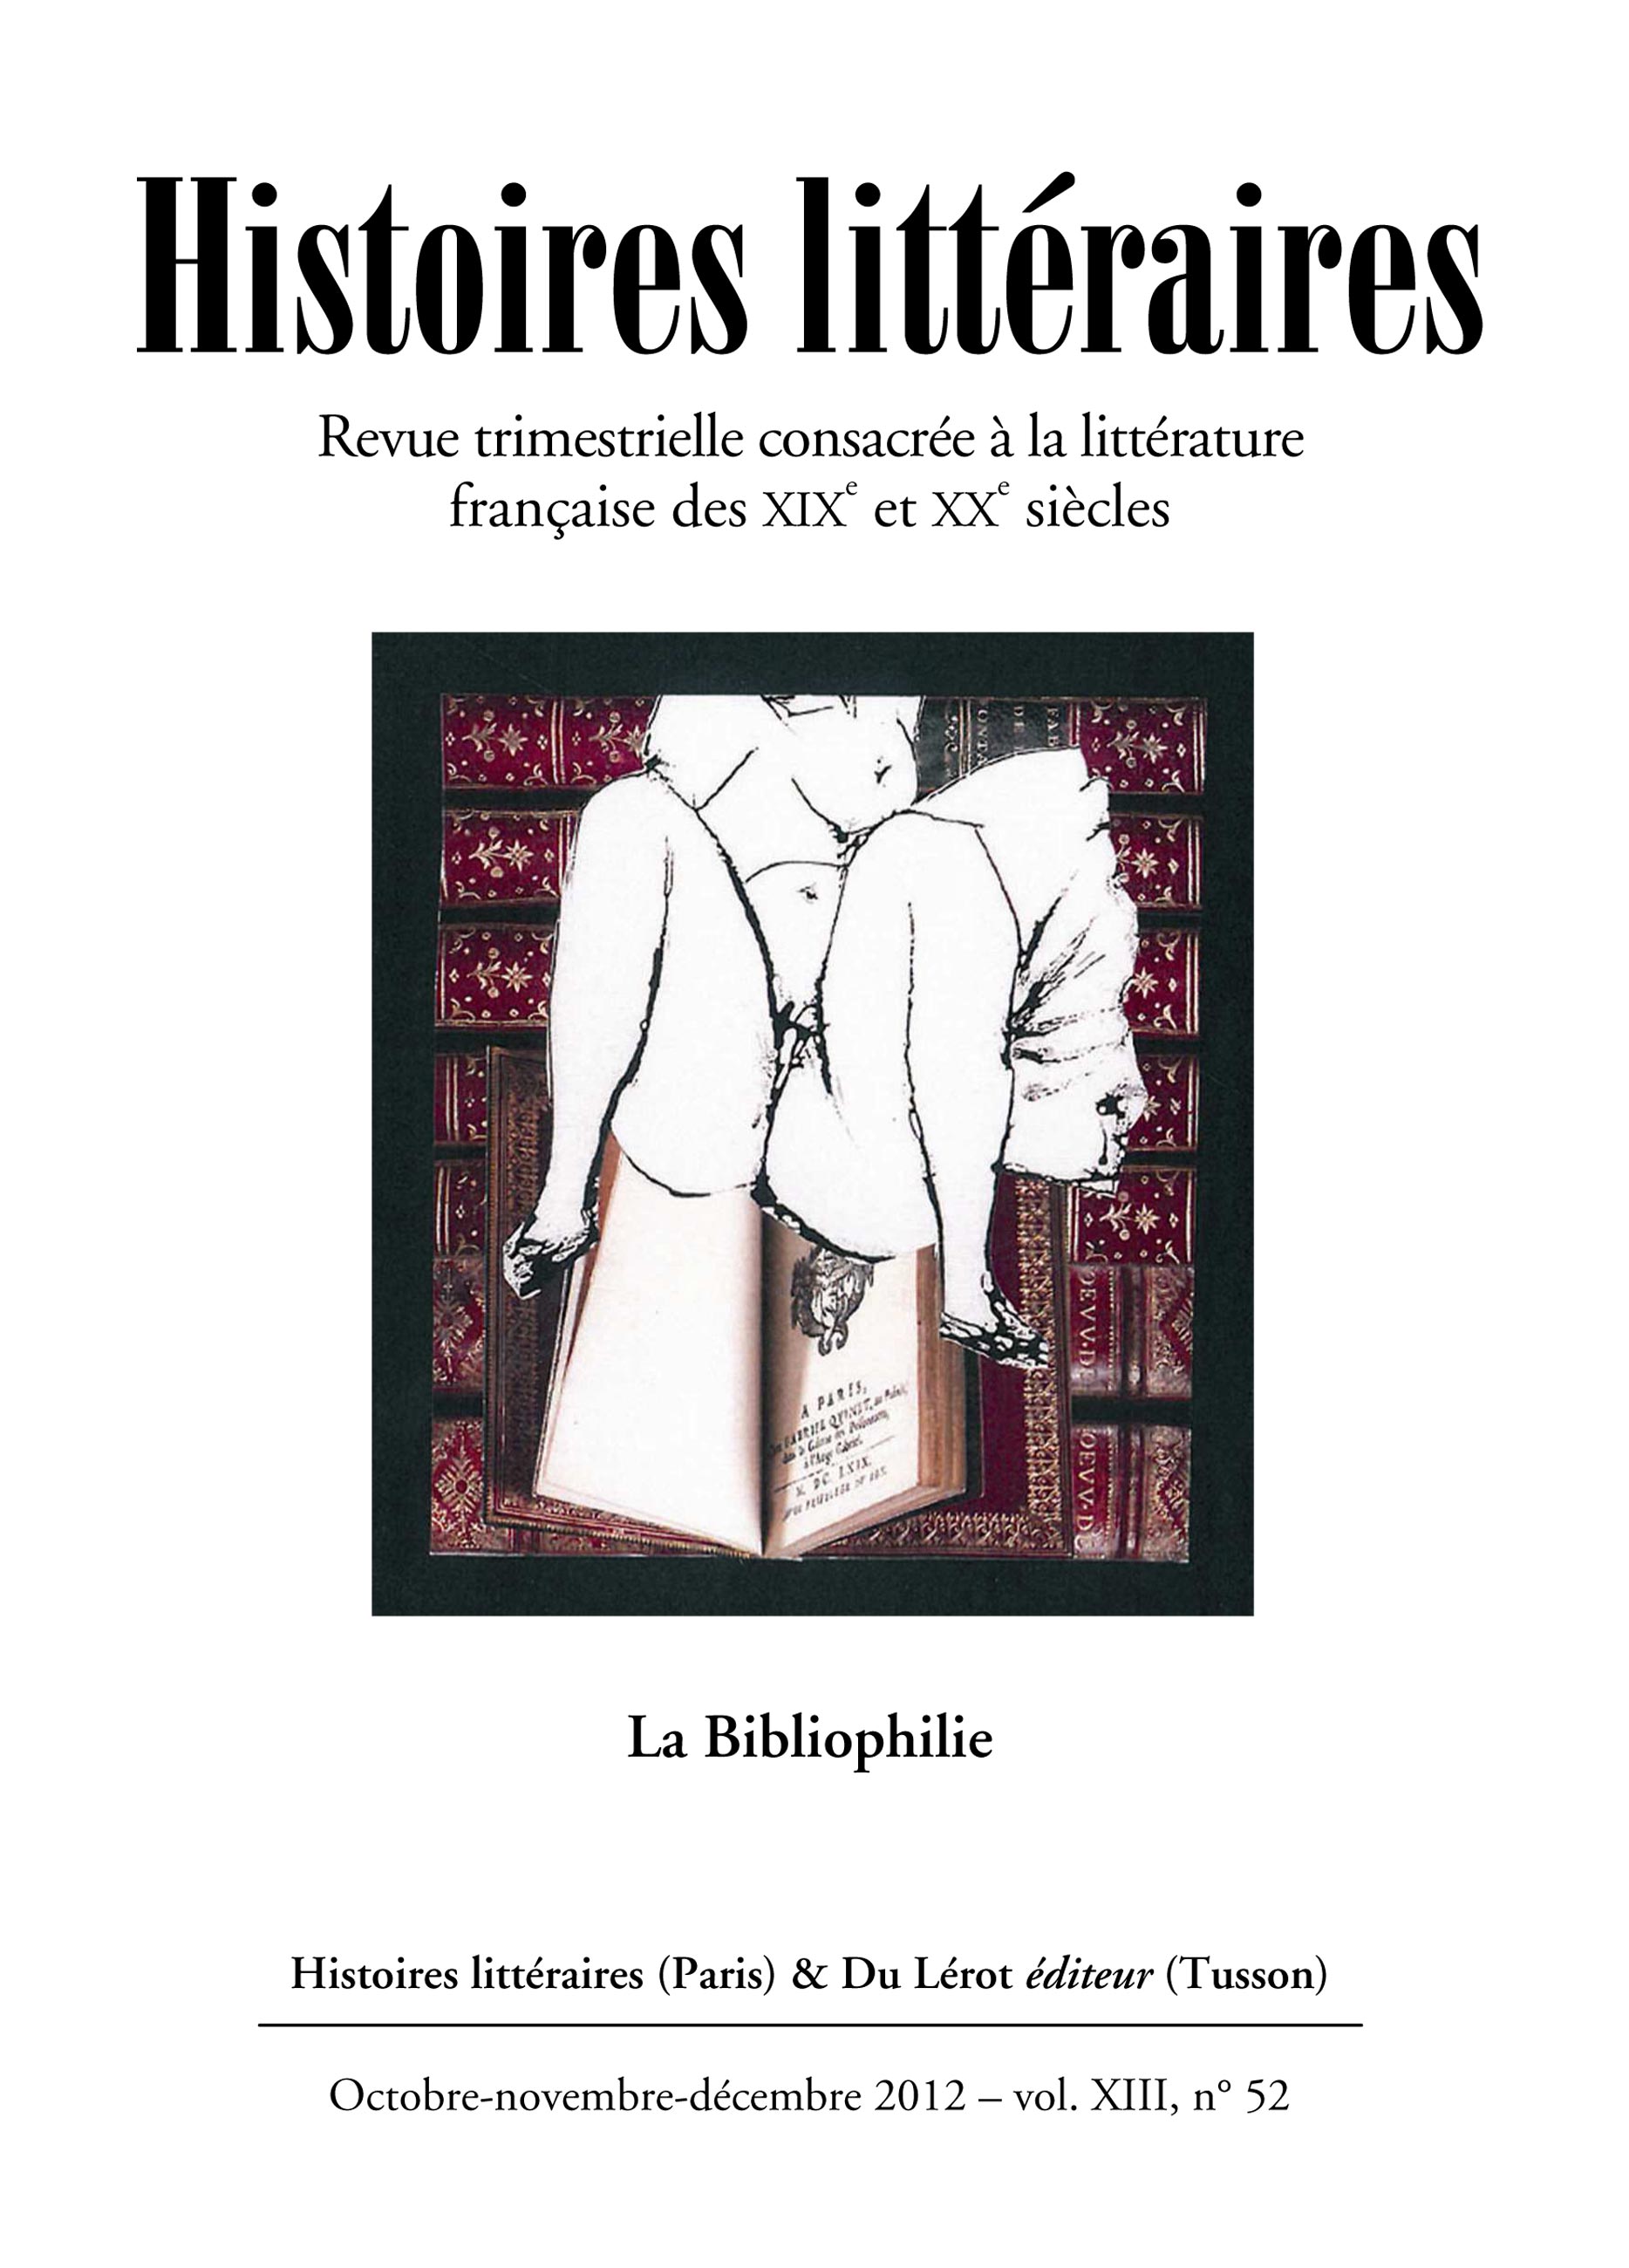 Couverture d'Histoires littéraires n°52